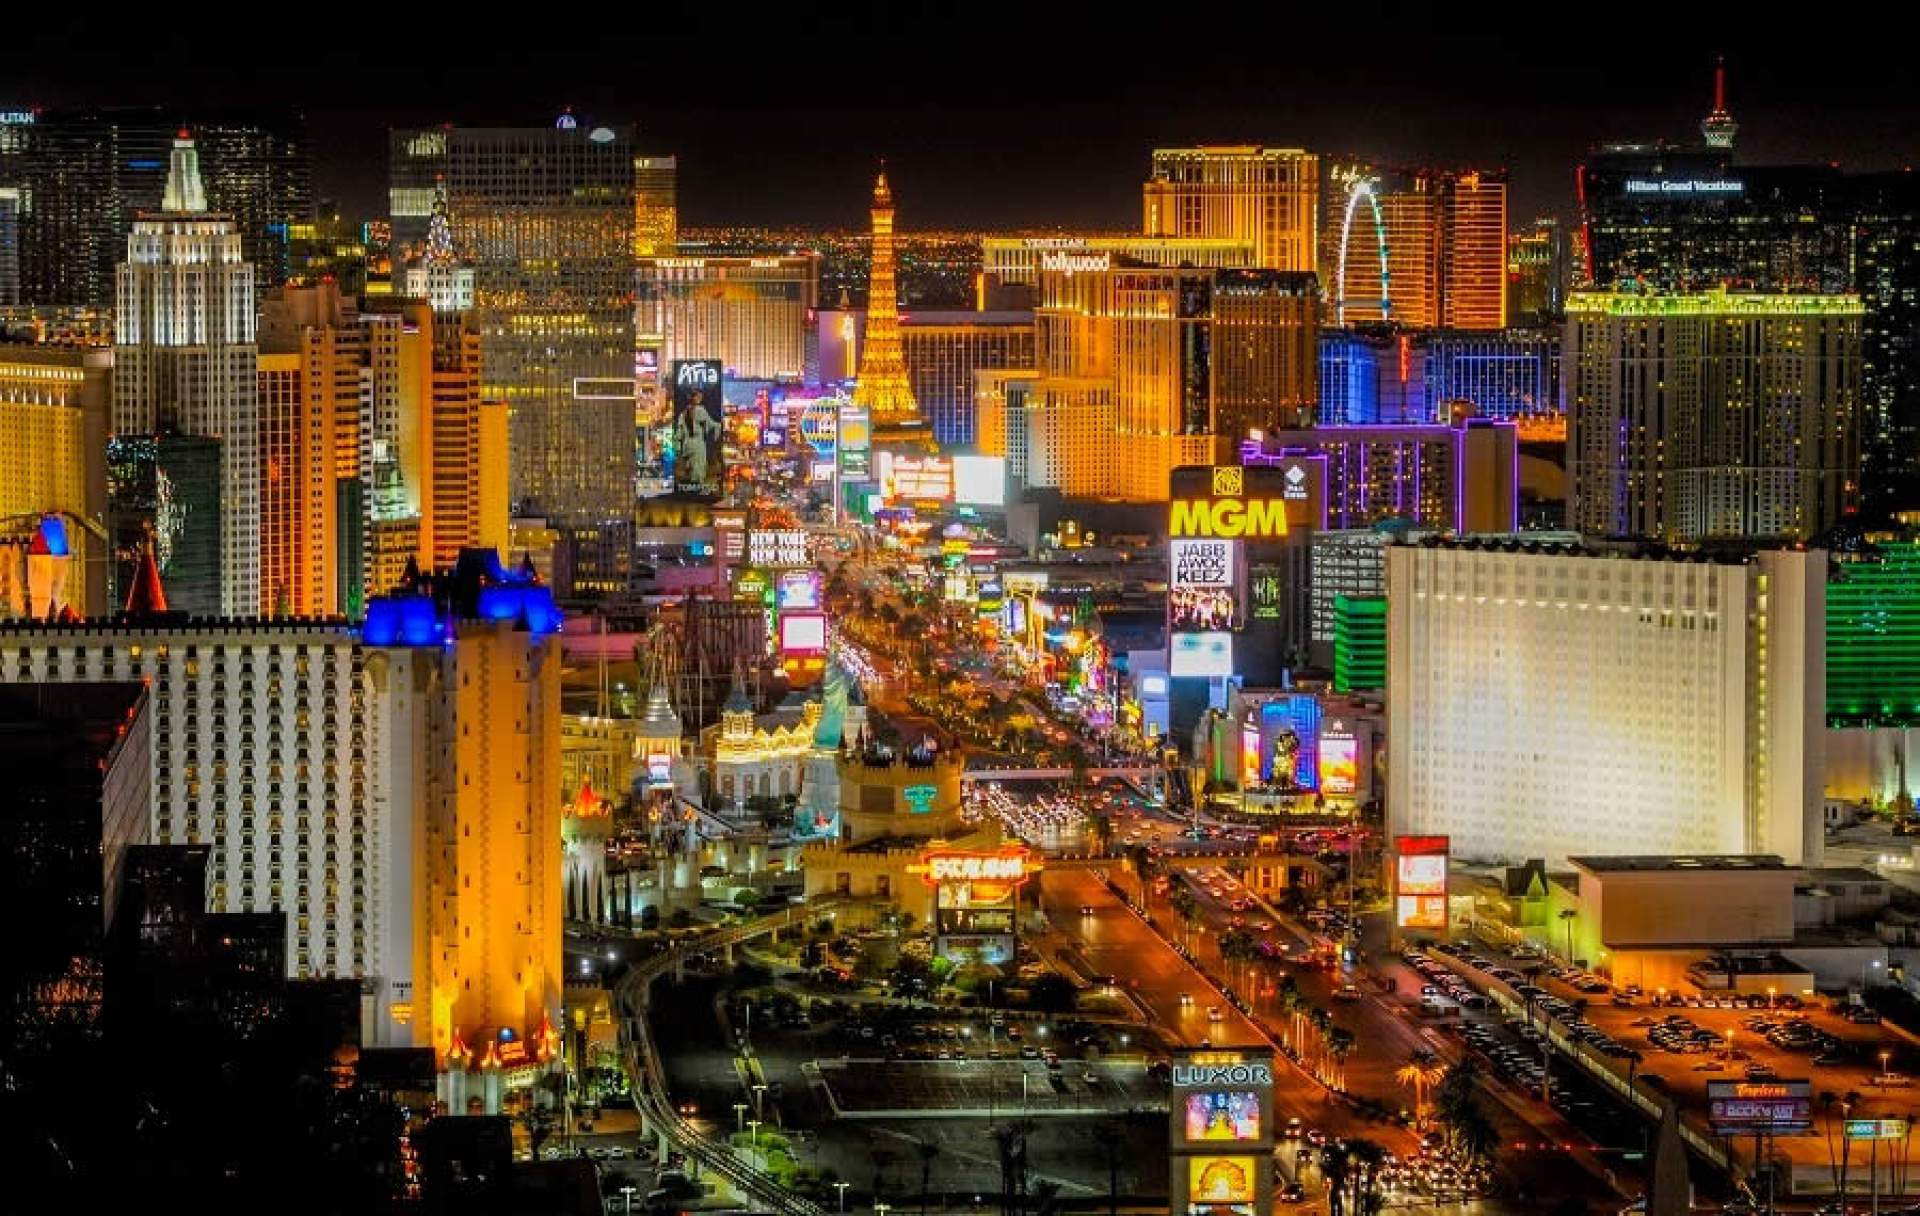 Las Vegas The Strip at night